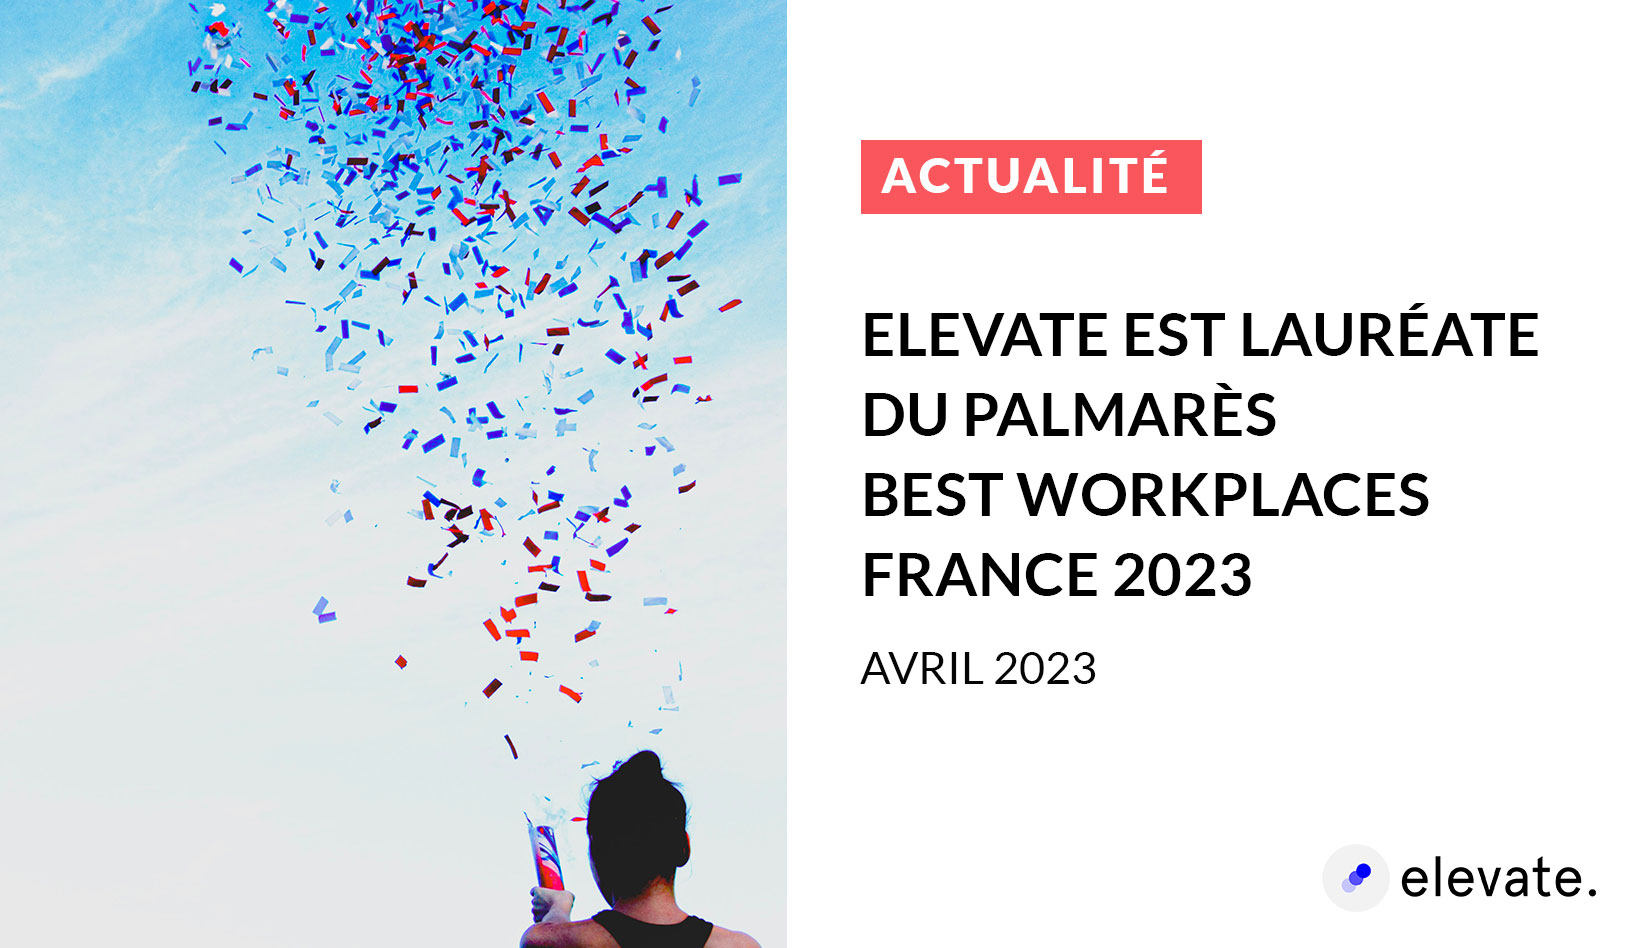 Elevate est lauréate du Palmarès Best Workplaces France 2023